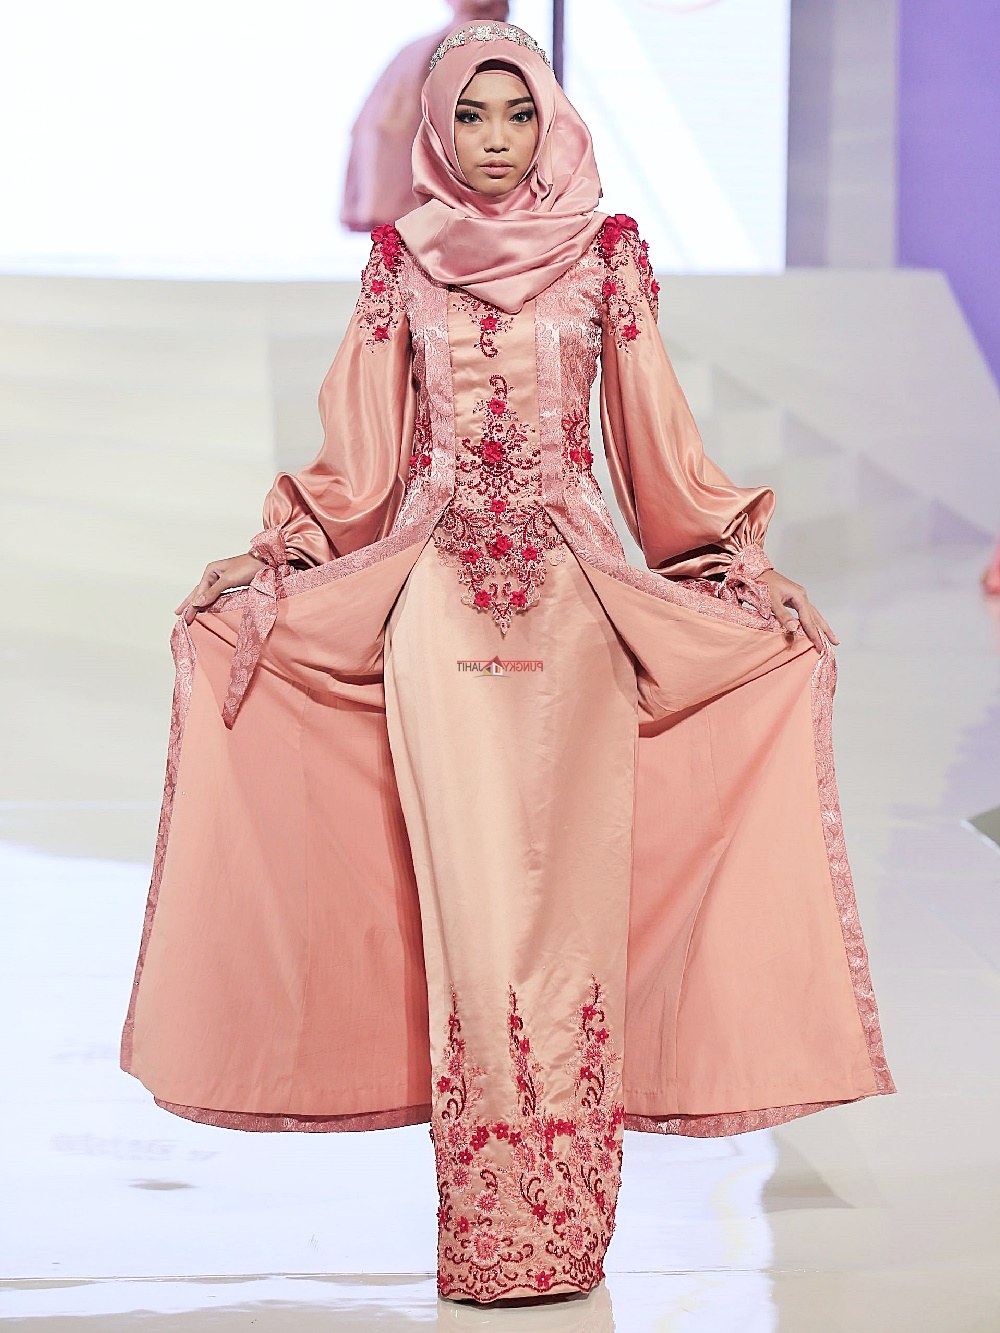 Bentuk Sewa Baju Pengantin Muslimah Ftd8 Sewa Perdana Baju Pengantin Muslimah Jogja Gaun Pengantin